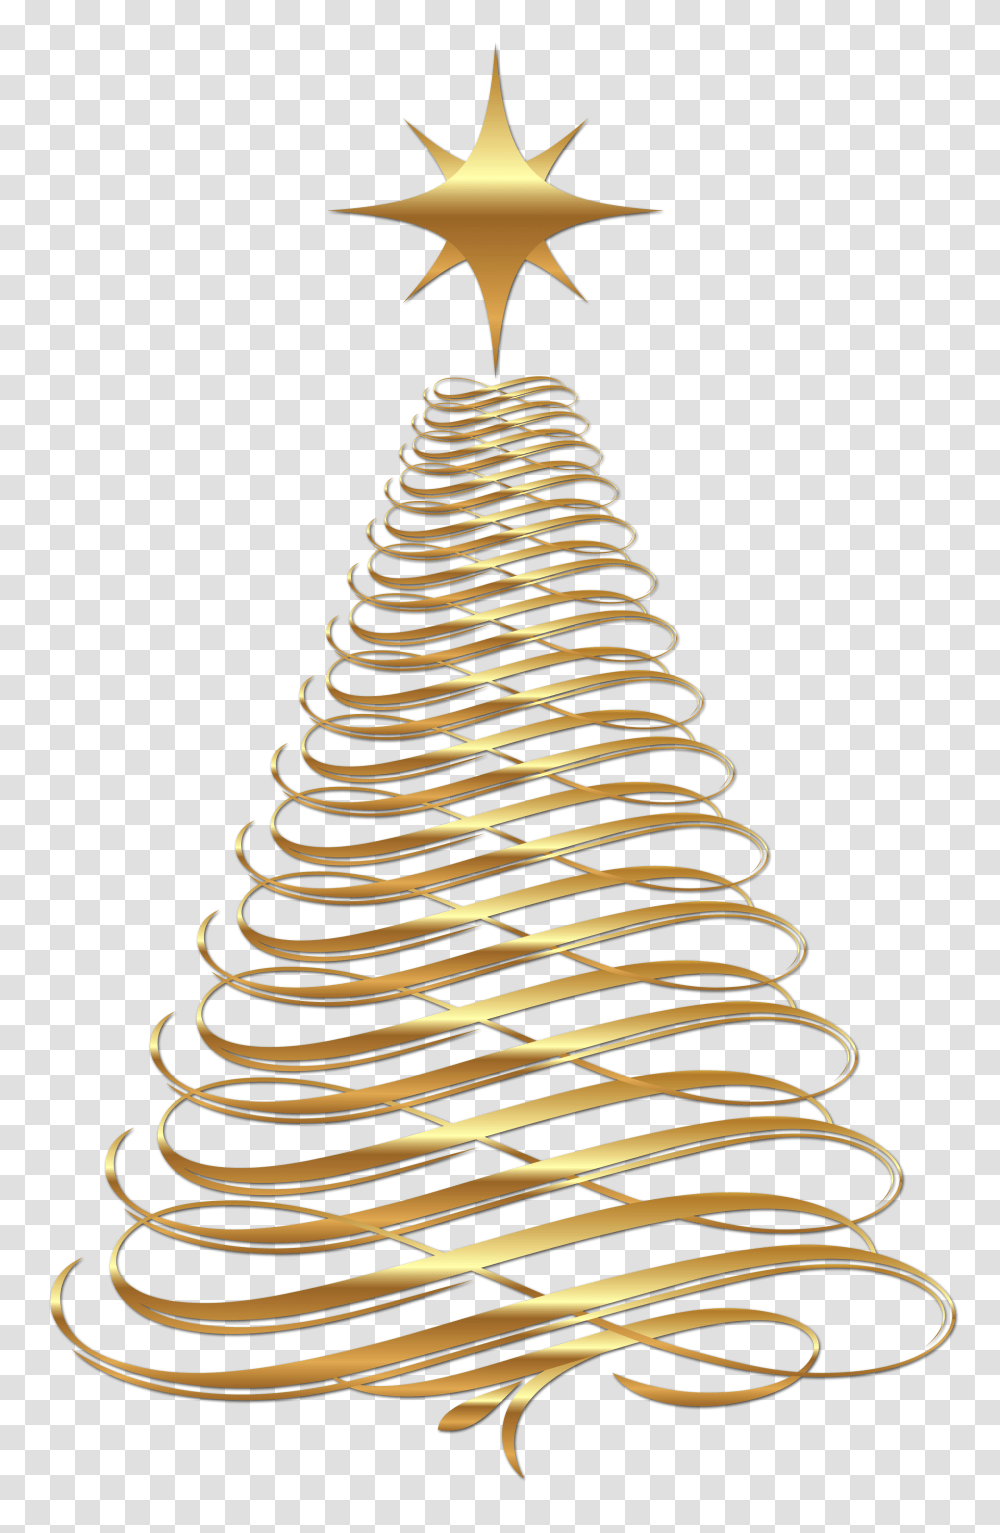 Download Image Result For Christmas Background Golden Christmas Tree, Wedding Cake, Dessert, Food, Spiral Transparent Png